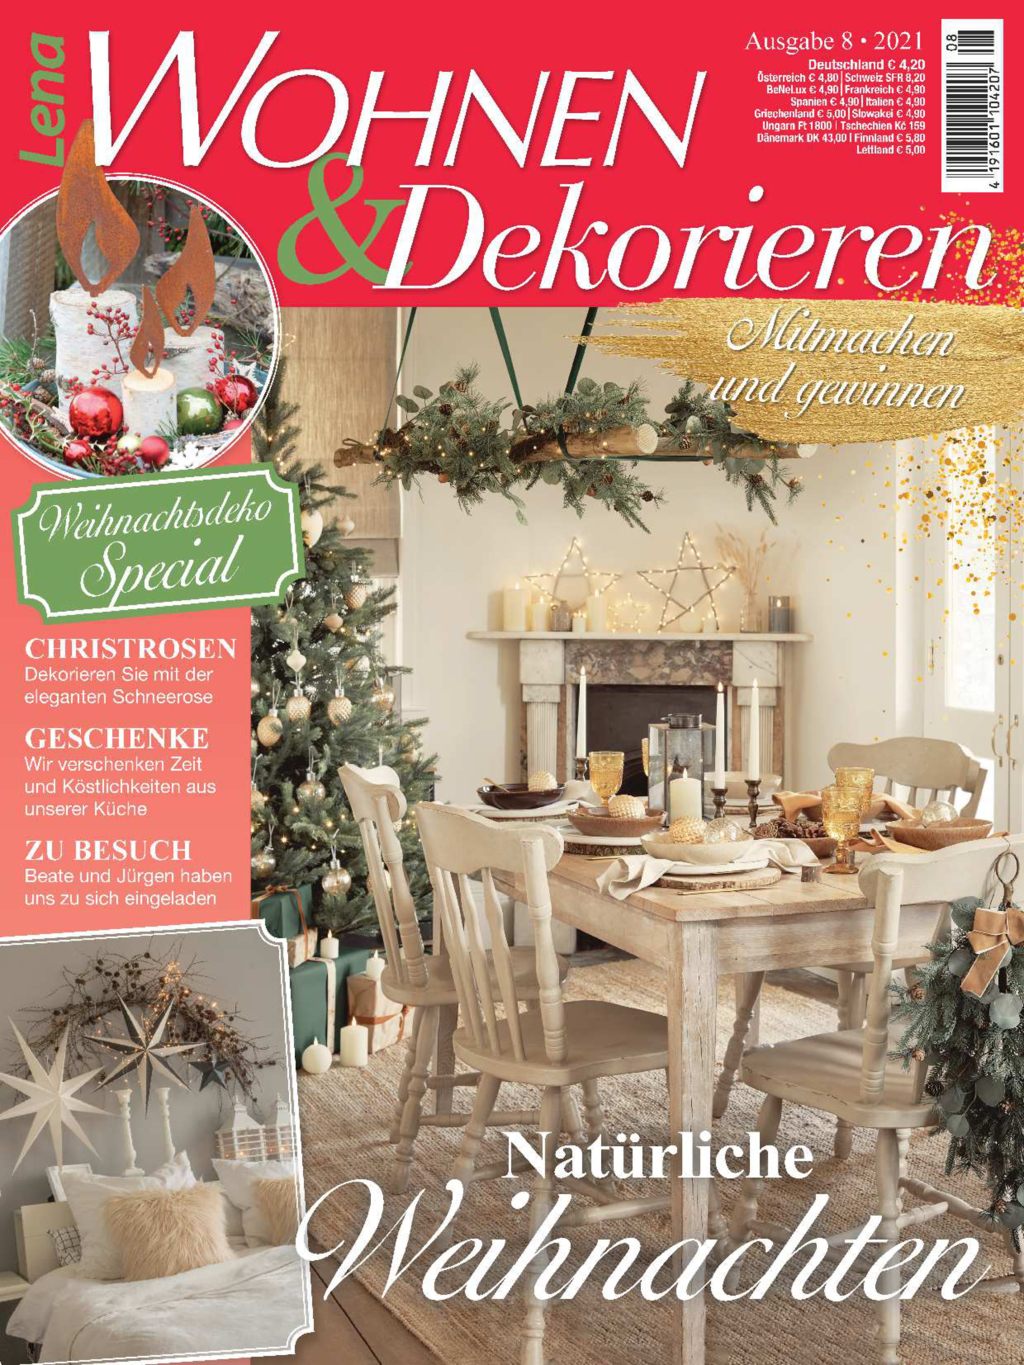 E-Paper: Lena Wohnen&Dekorieren Nr. 8/2021 - Natürliche Weihnachten